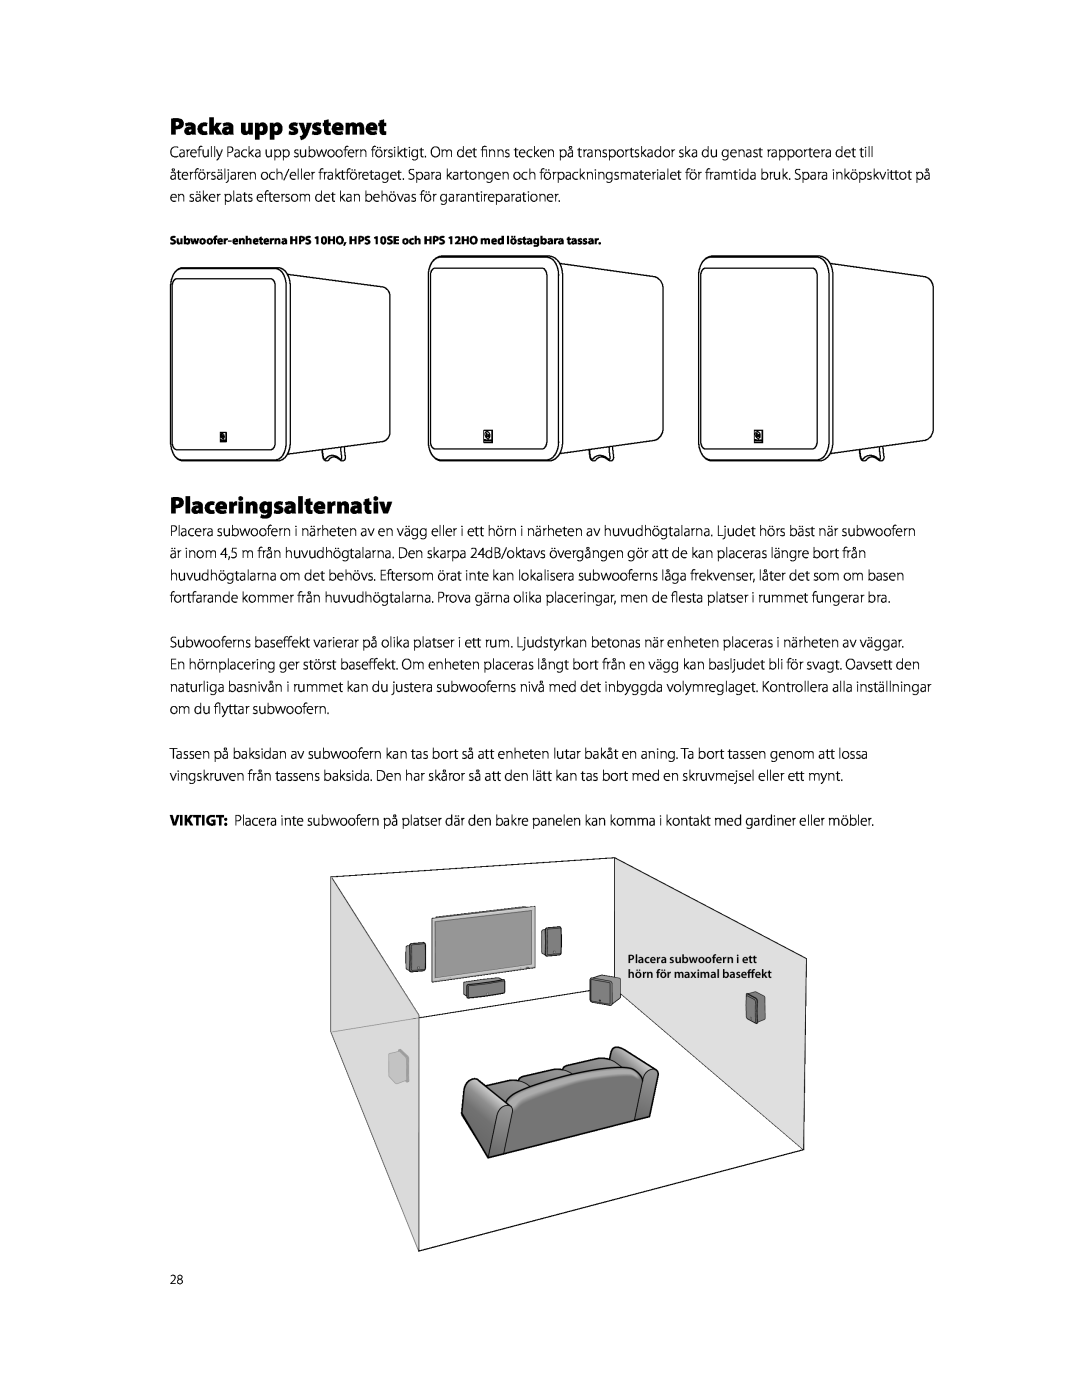 Boston Acoustics HPS10HO owner manual Packa upp systemet, Placeringsalternativ 